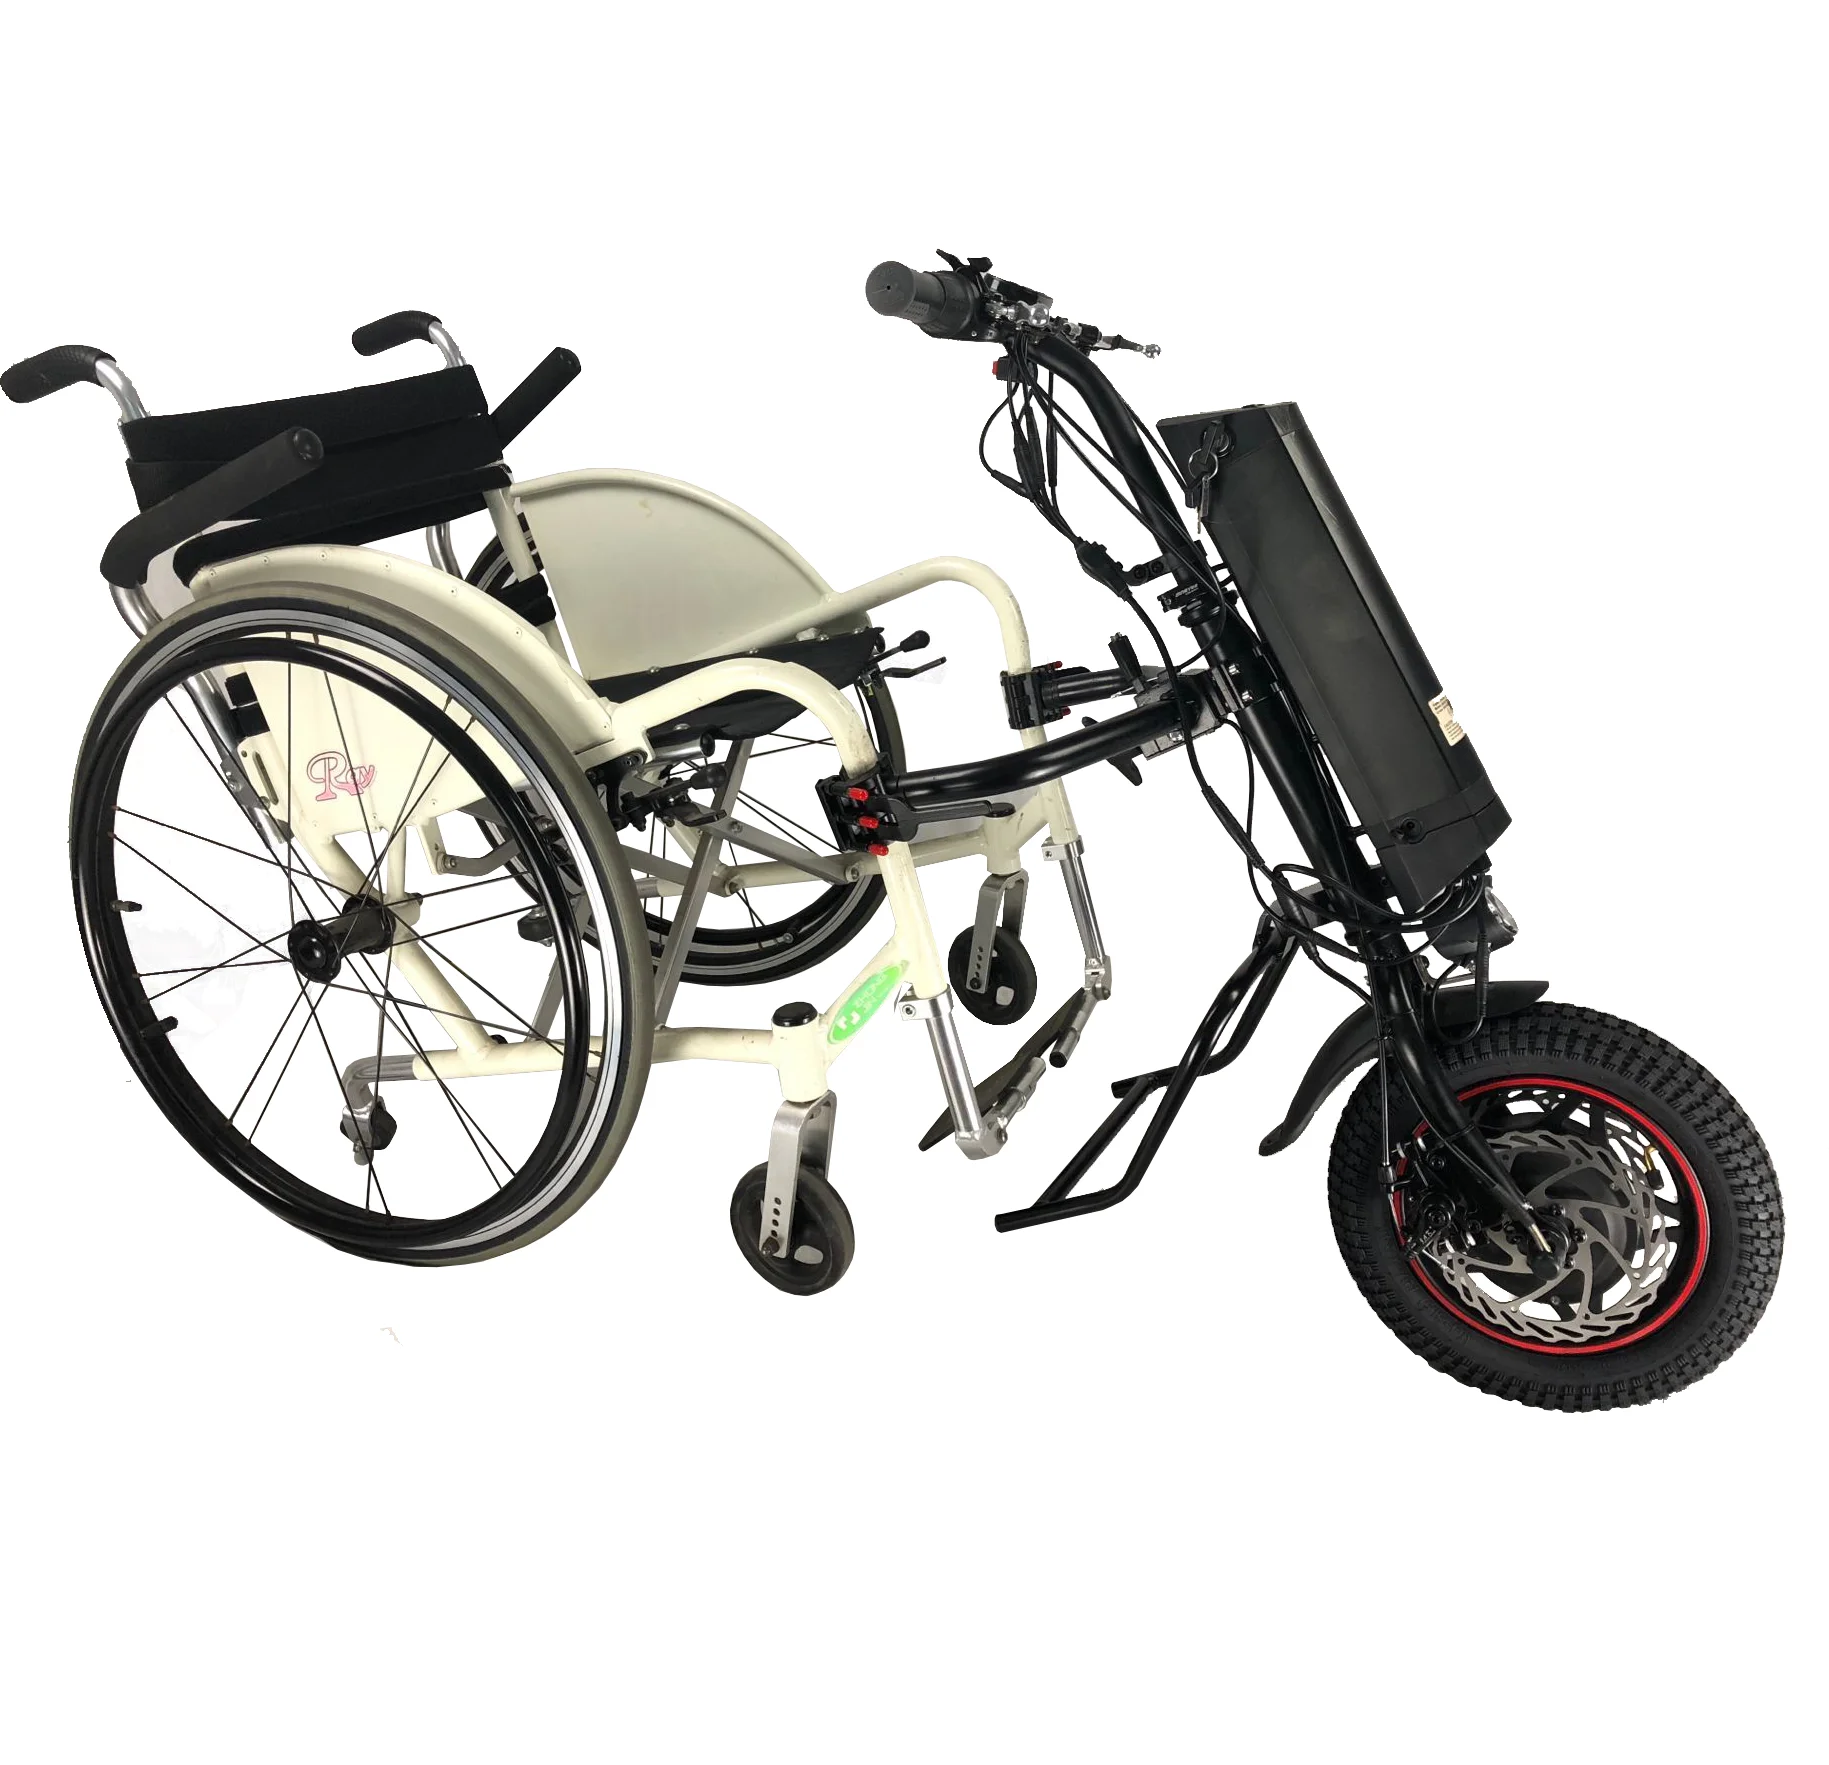 Электро приставки. 36v 350w Electric wheelchair. Электрический привод для инвалидной коляски Eltreco Sunny. Хэндбайк для инвалидной коляски. Электро приставка для инвалидной коляски Eltreco Sunny.